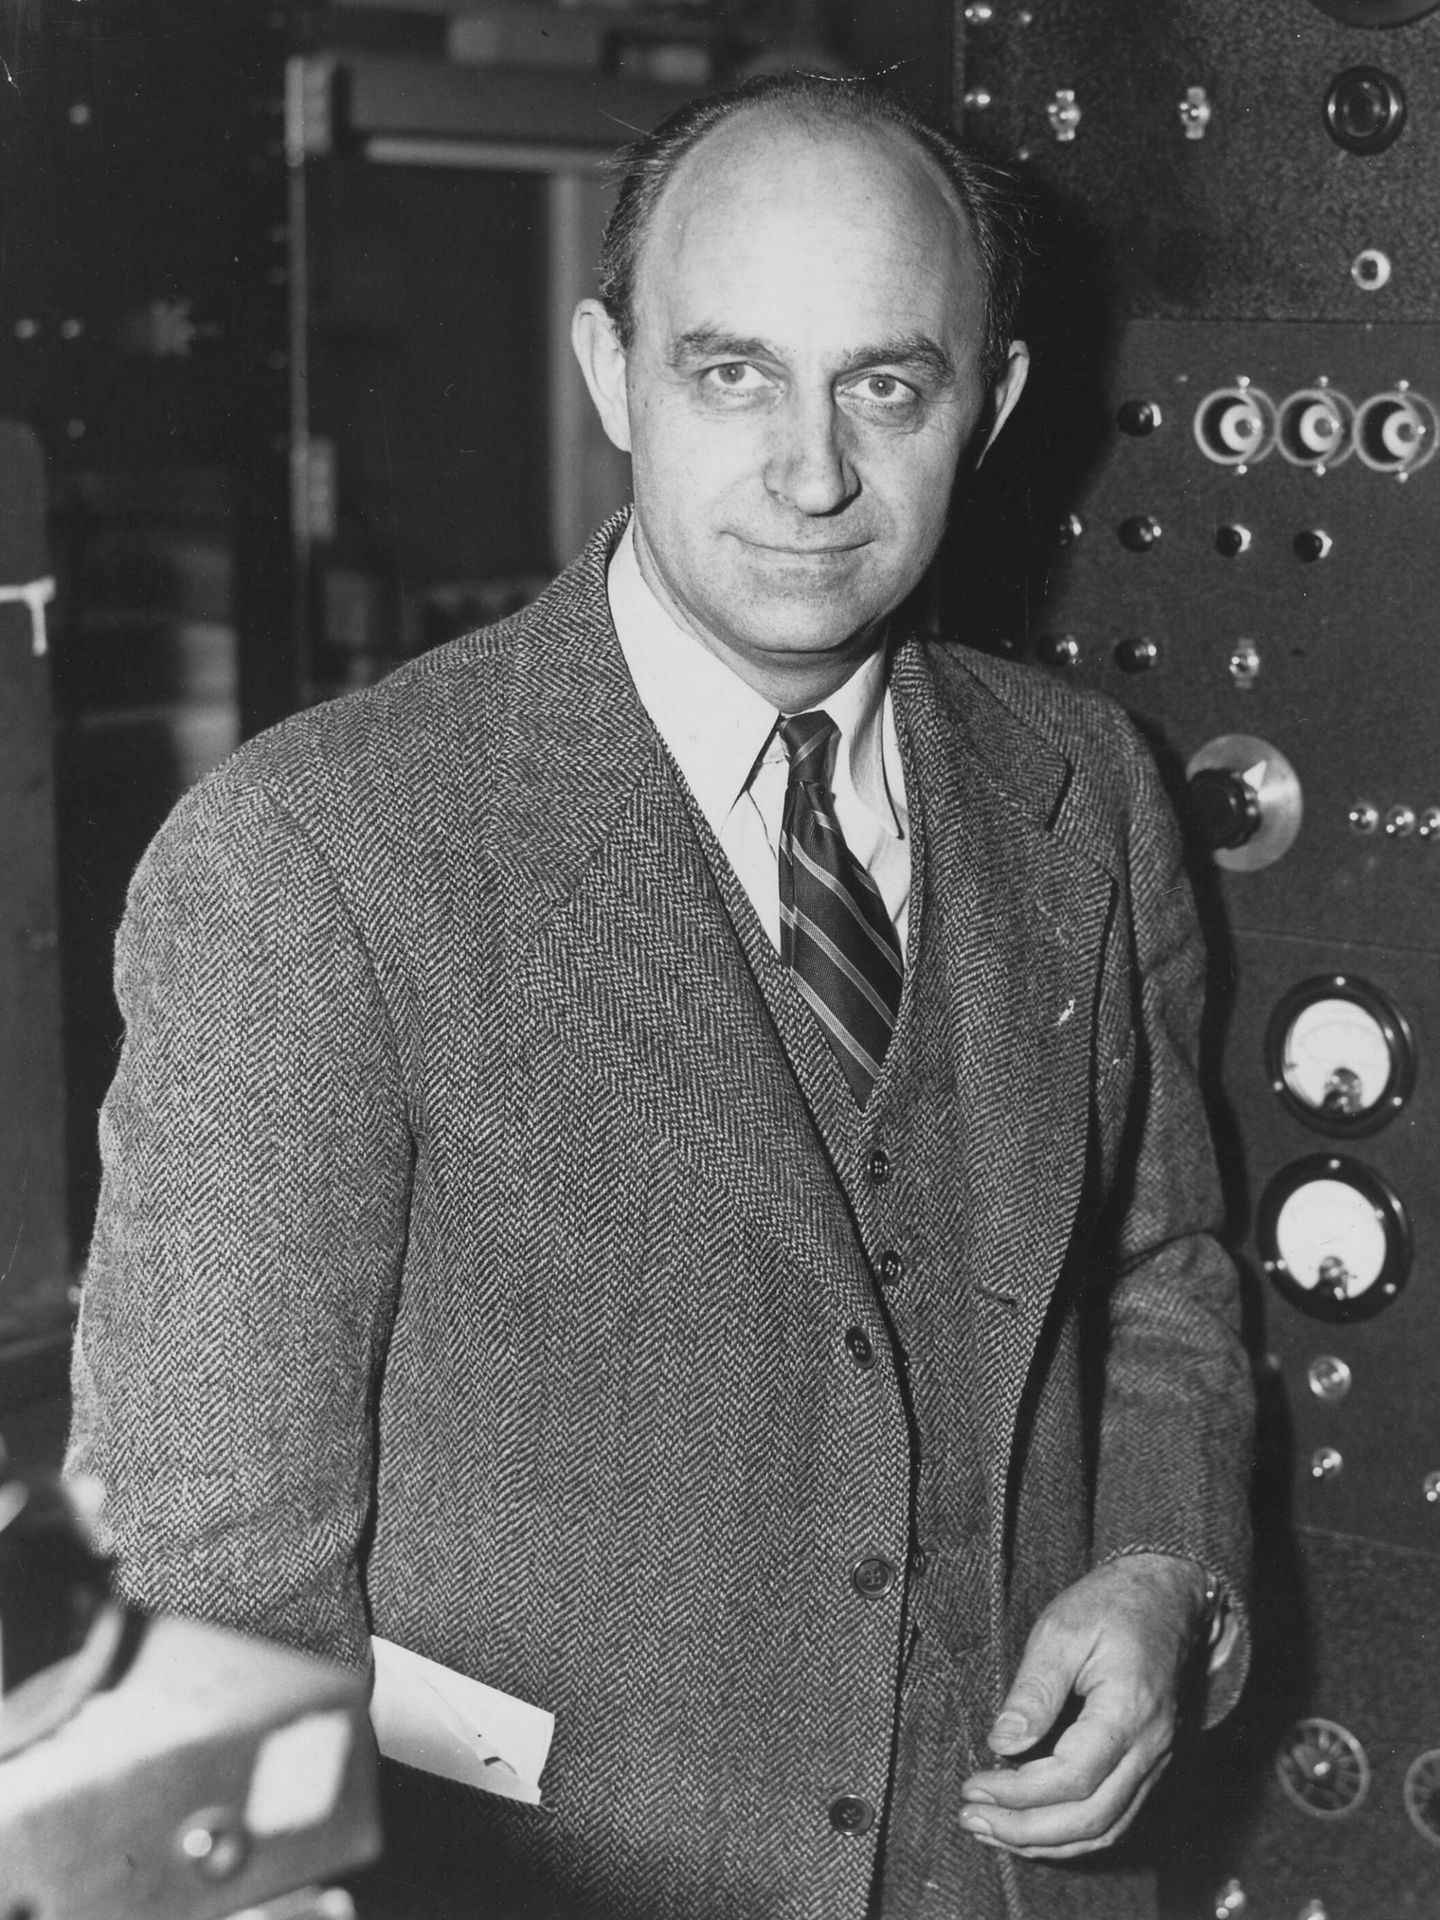 Enrico Fermi recibió el Premio Nobel de Física de 1938 por identificar nuevos elementos y descubrir reacciones nucleares. También creo el primer reactor nuclear de fisión autosostenible y se hizo la pregunta de por qué ninguna civilización alieníge